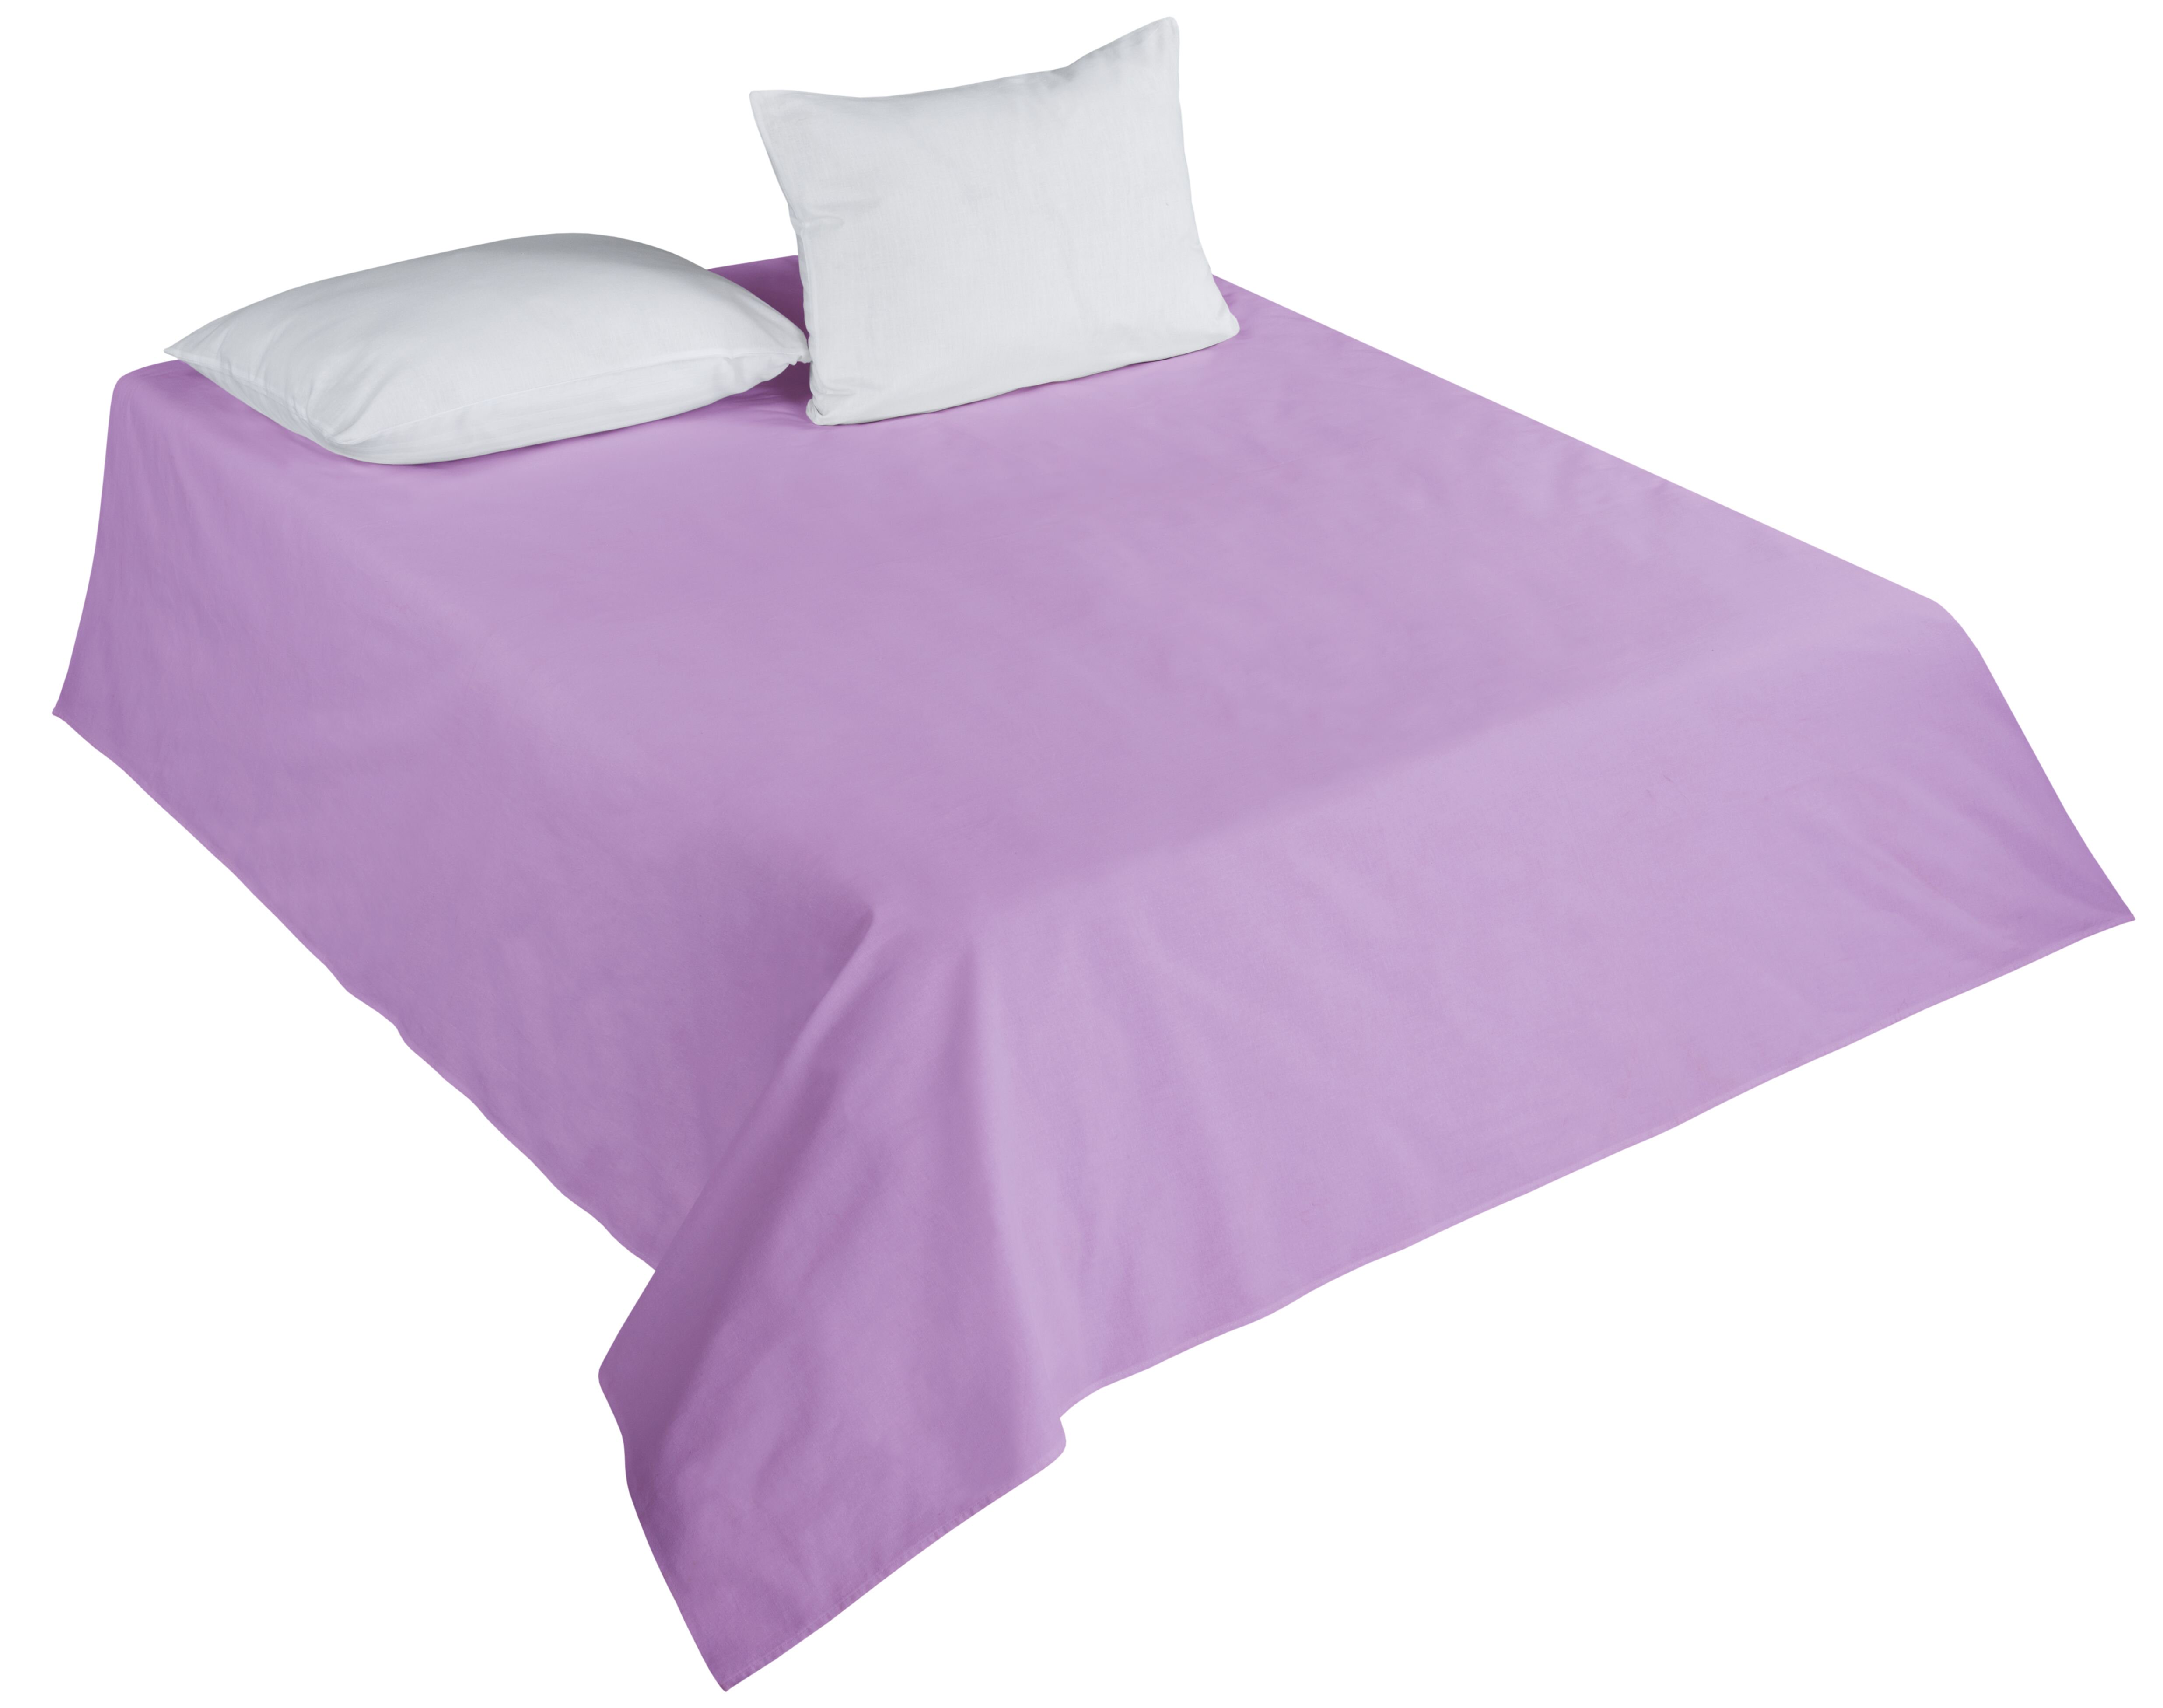 Простыня Dandrenor Цвет: Фиолетовый (180х214), размер 180х214 gmg486188 Простыня Dandrenor Цвет: Фиолетовый (180х214) - фото 1